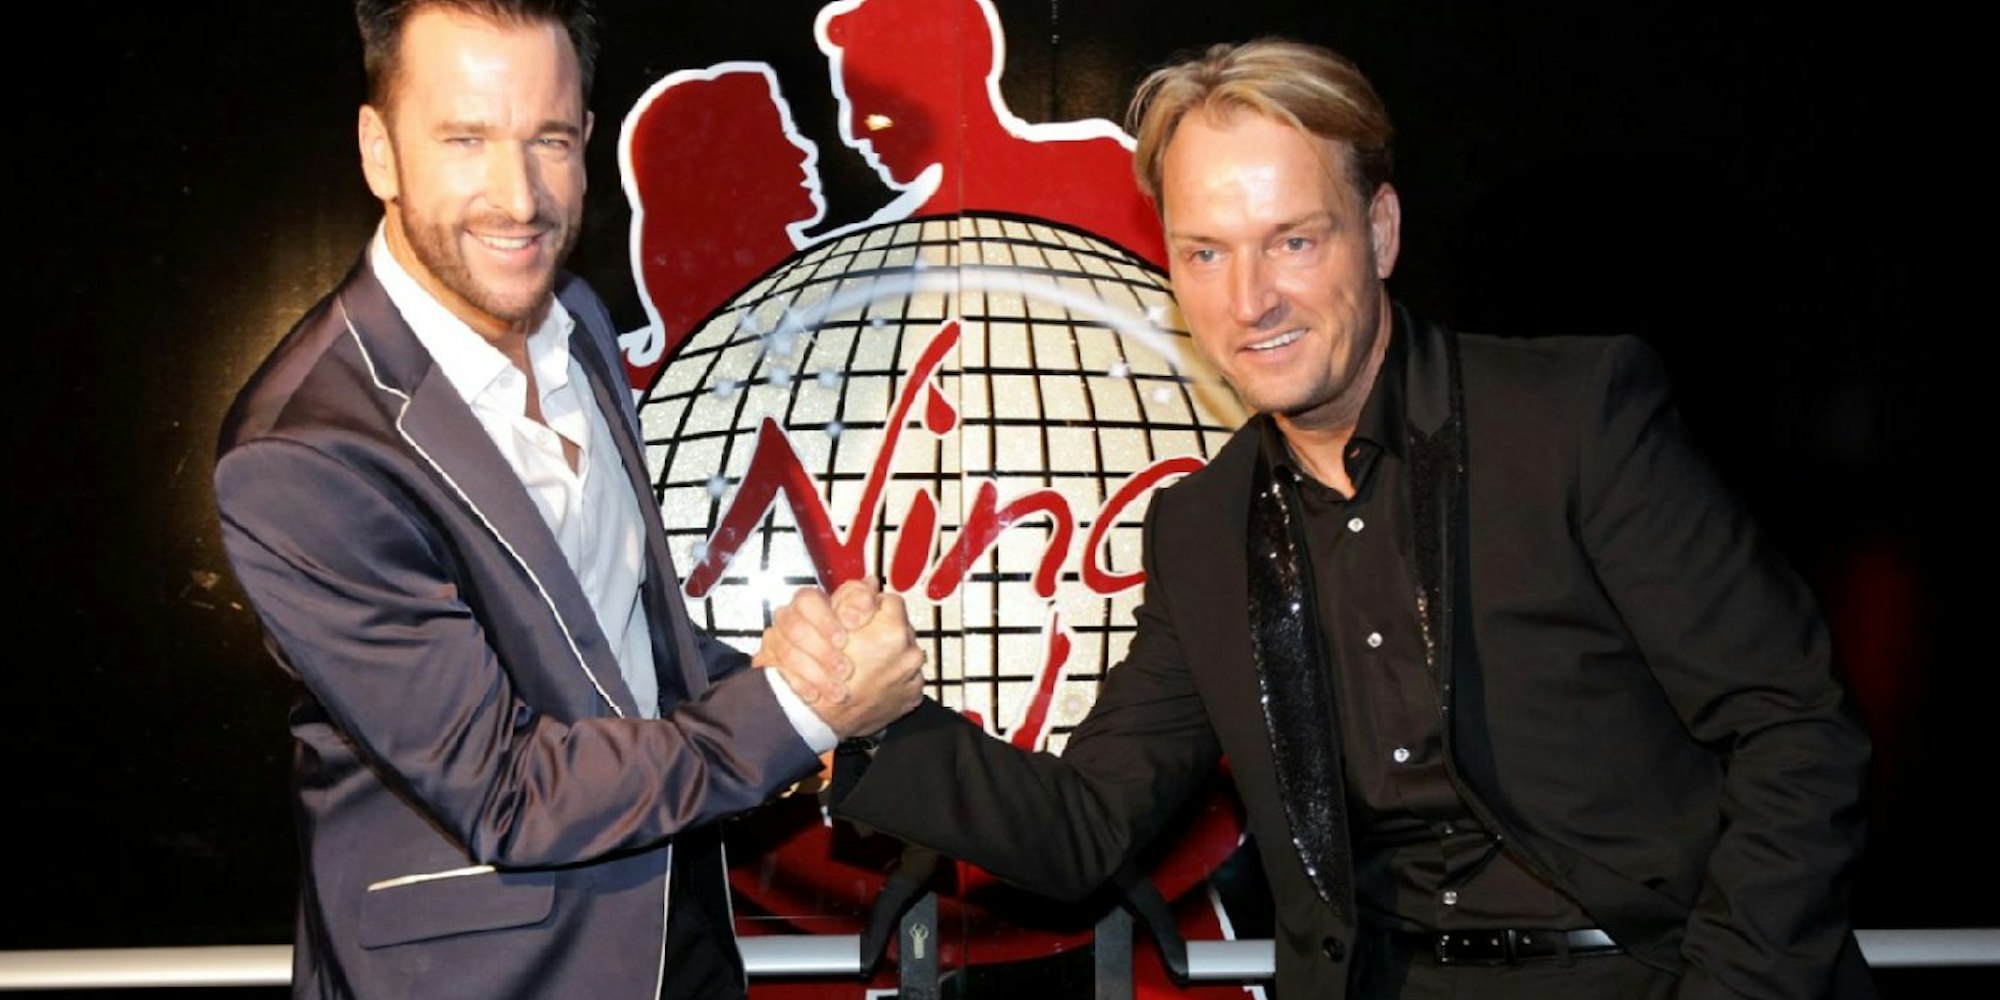 Schlagersänger Michael Wendler (links) und sein Manager Markus Krampemit eröffneten im Oktober 2014 die Disko „Nina“ im Agnesviertel.